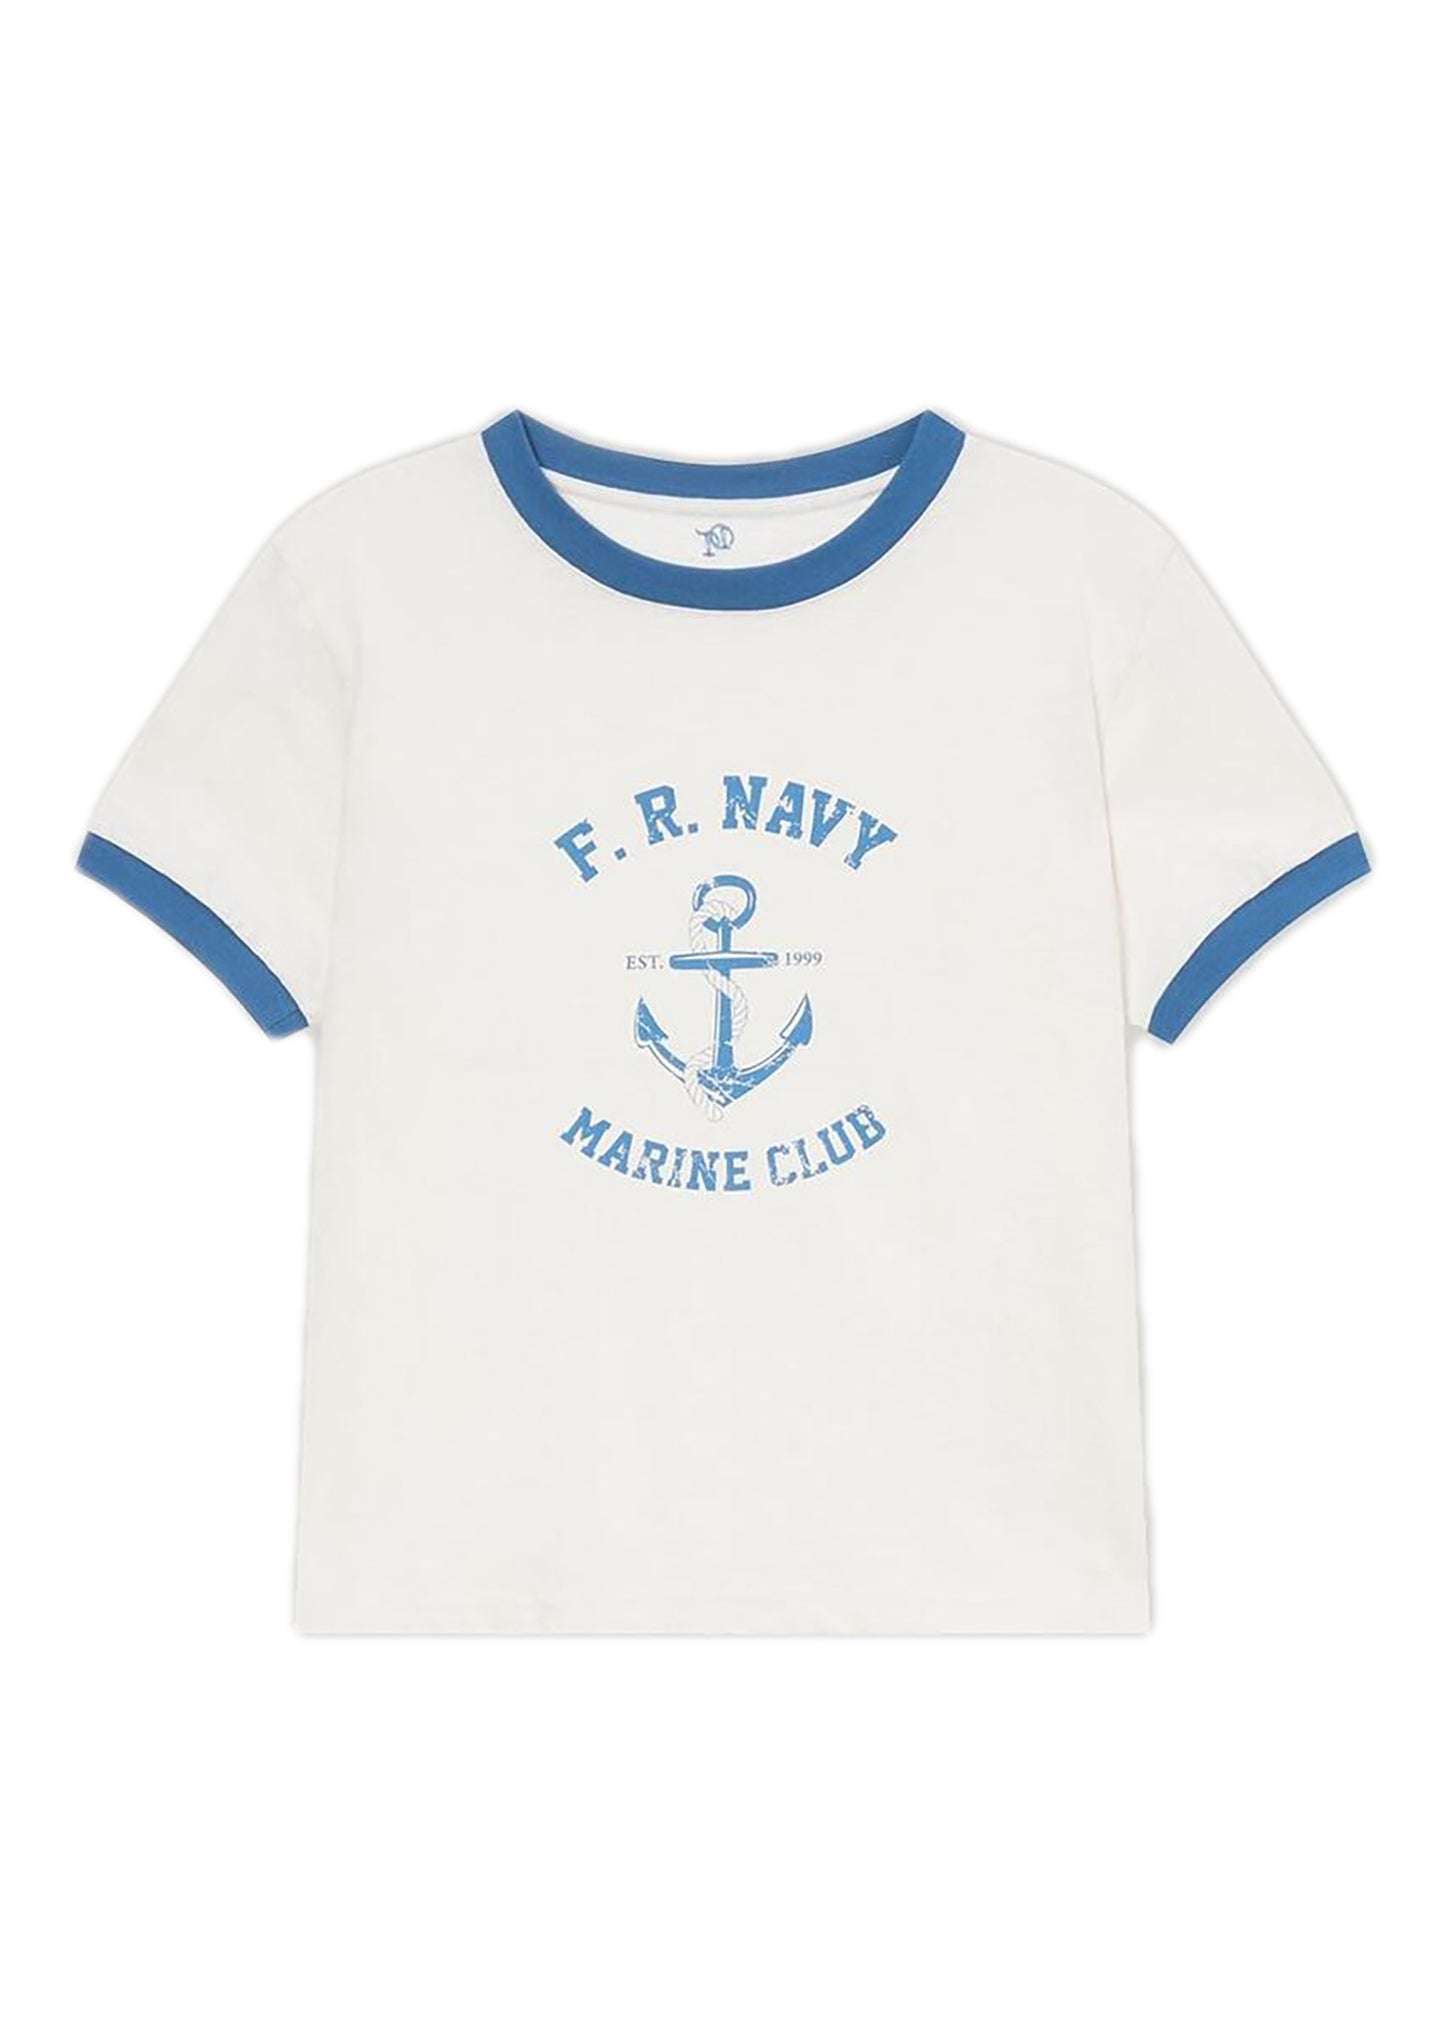 Vintage Marine Club T-shirt